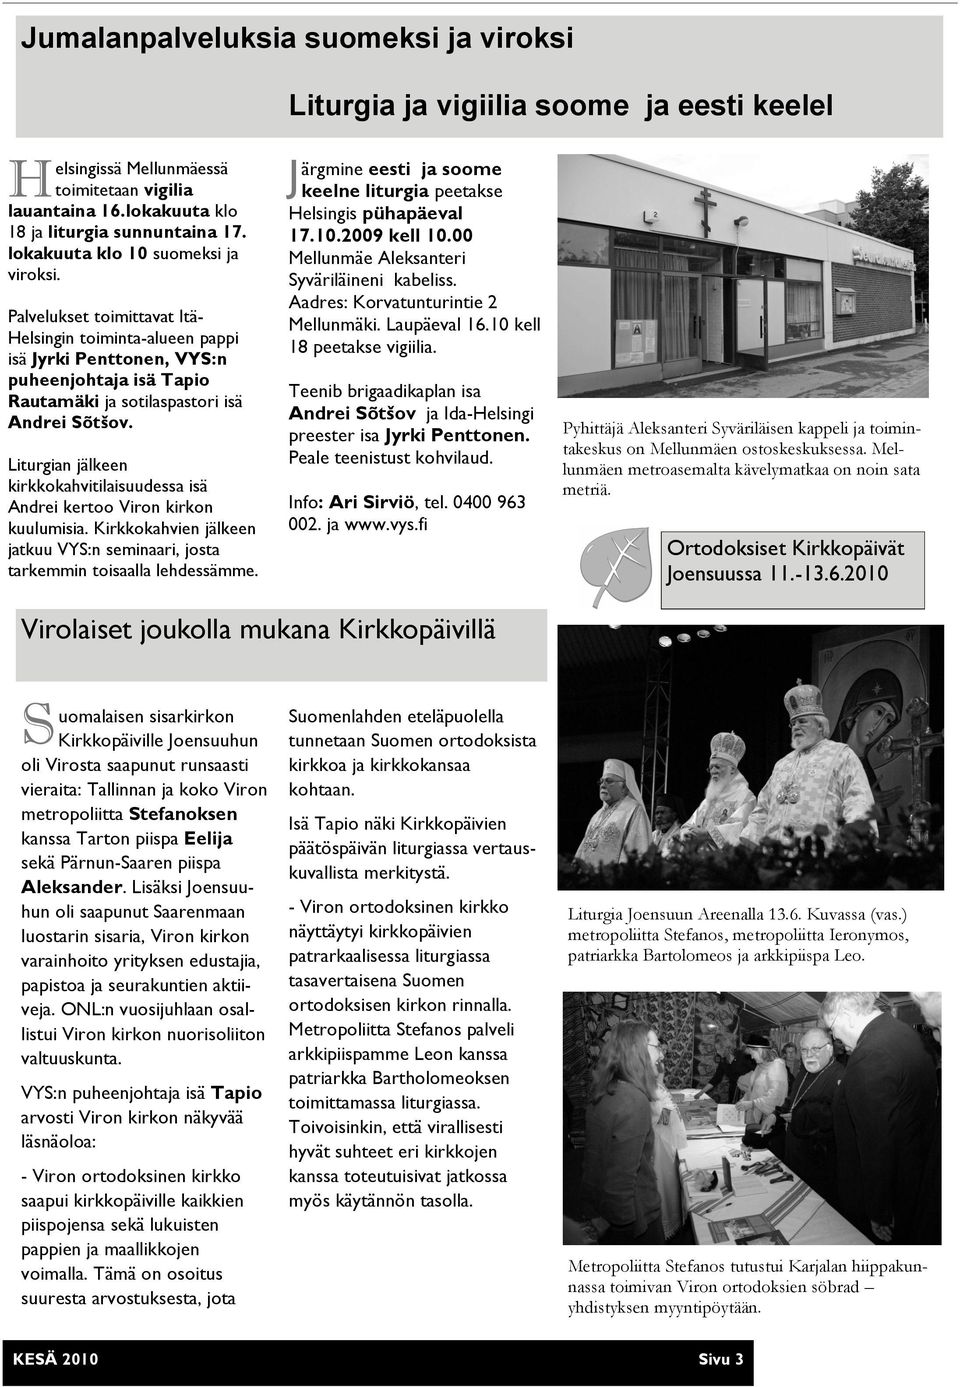 Liturgian jälkeen kirkkokahvitilaisuudessa isä Andrei kertoo Viron kirkon kuulumisia. Kirkkokahvien jälkeen jatkuu VYS:n seminaari, josta tarkemmin toisaalla lehdessämme.